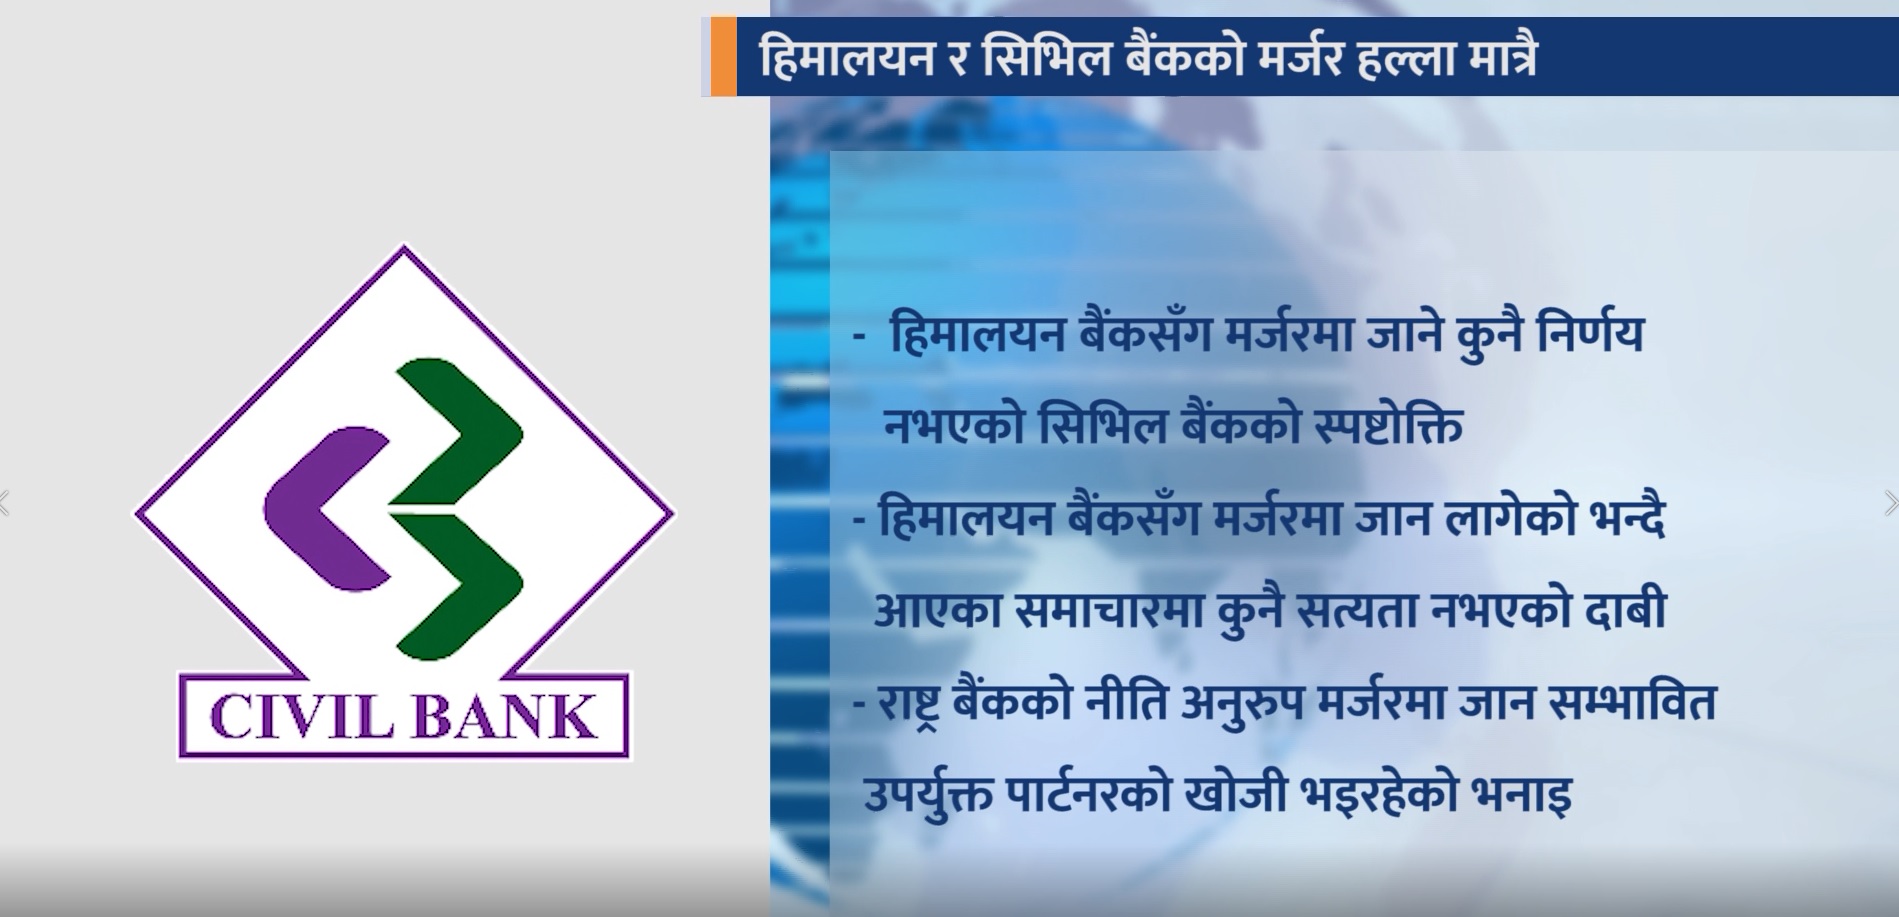 हिमालयन बैंकसँग मर्जरमा जाने निर्णय नभएको सिभिल बैंकको प्रष्टिकरण